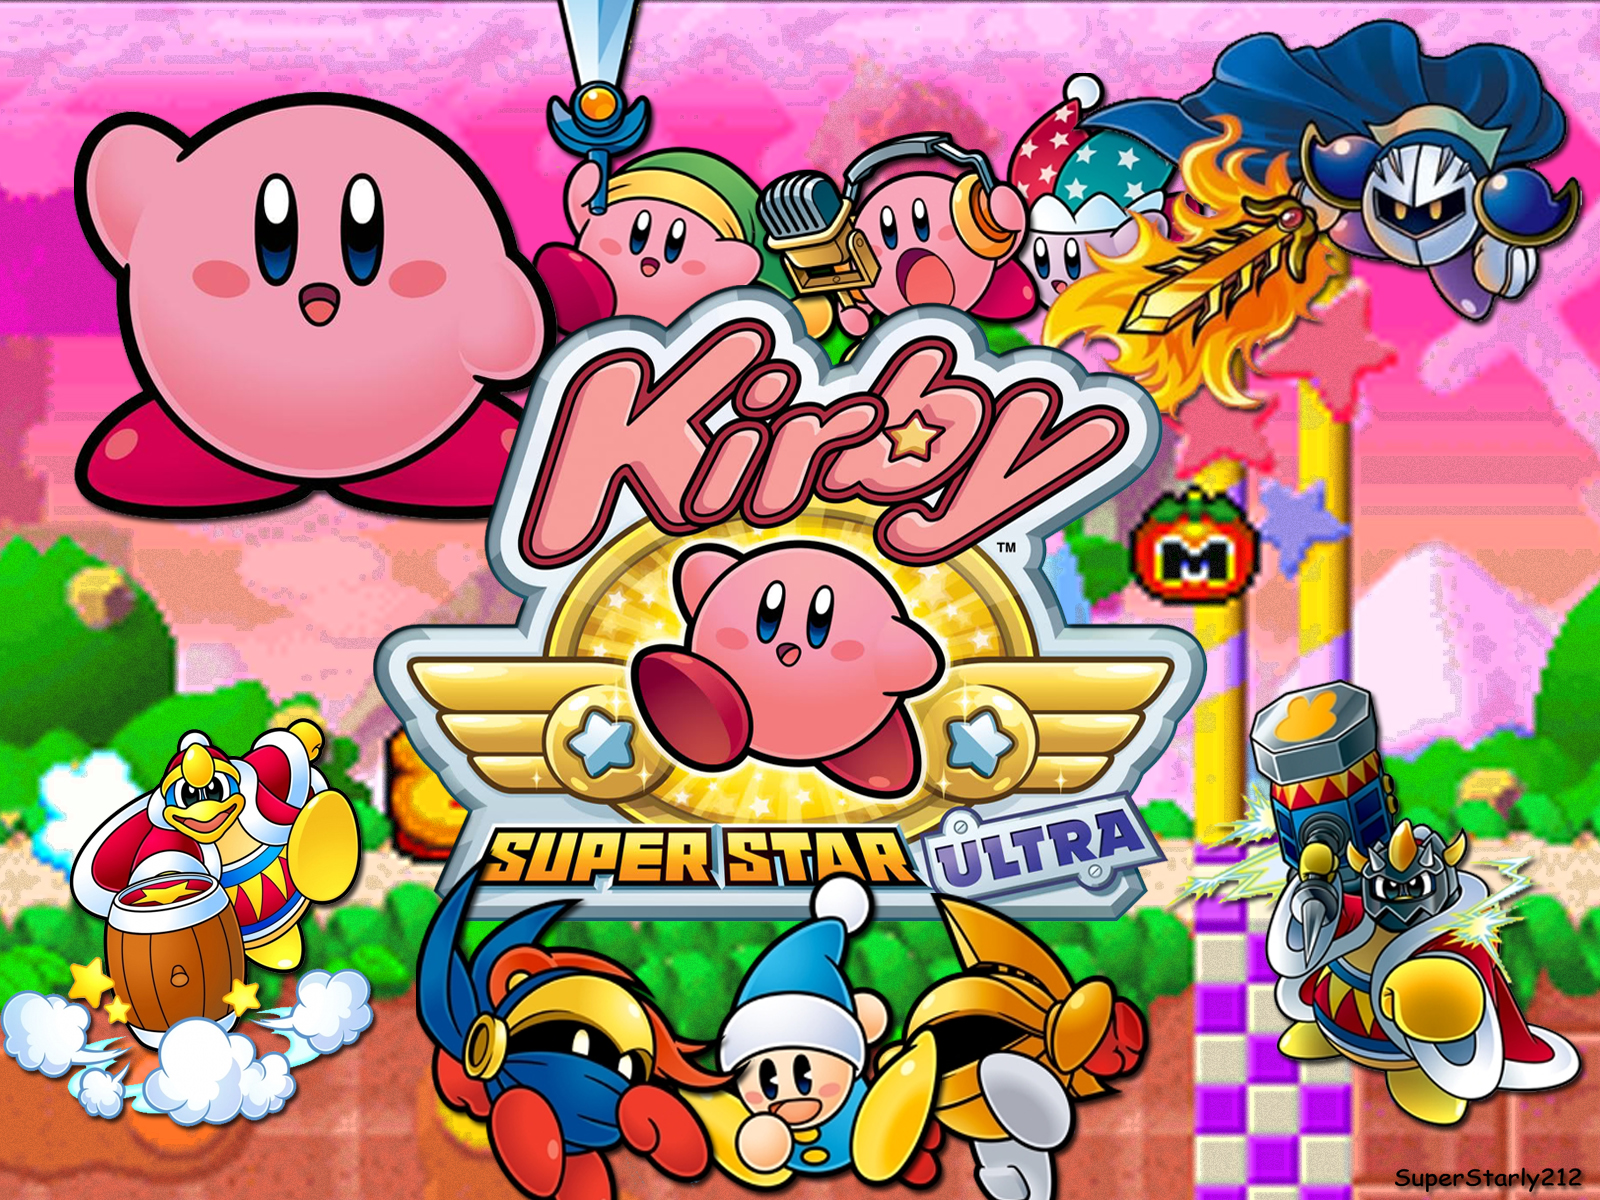  46 Kirby Super Star Ultra  Wallpaper on WallpaperSafari